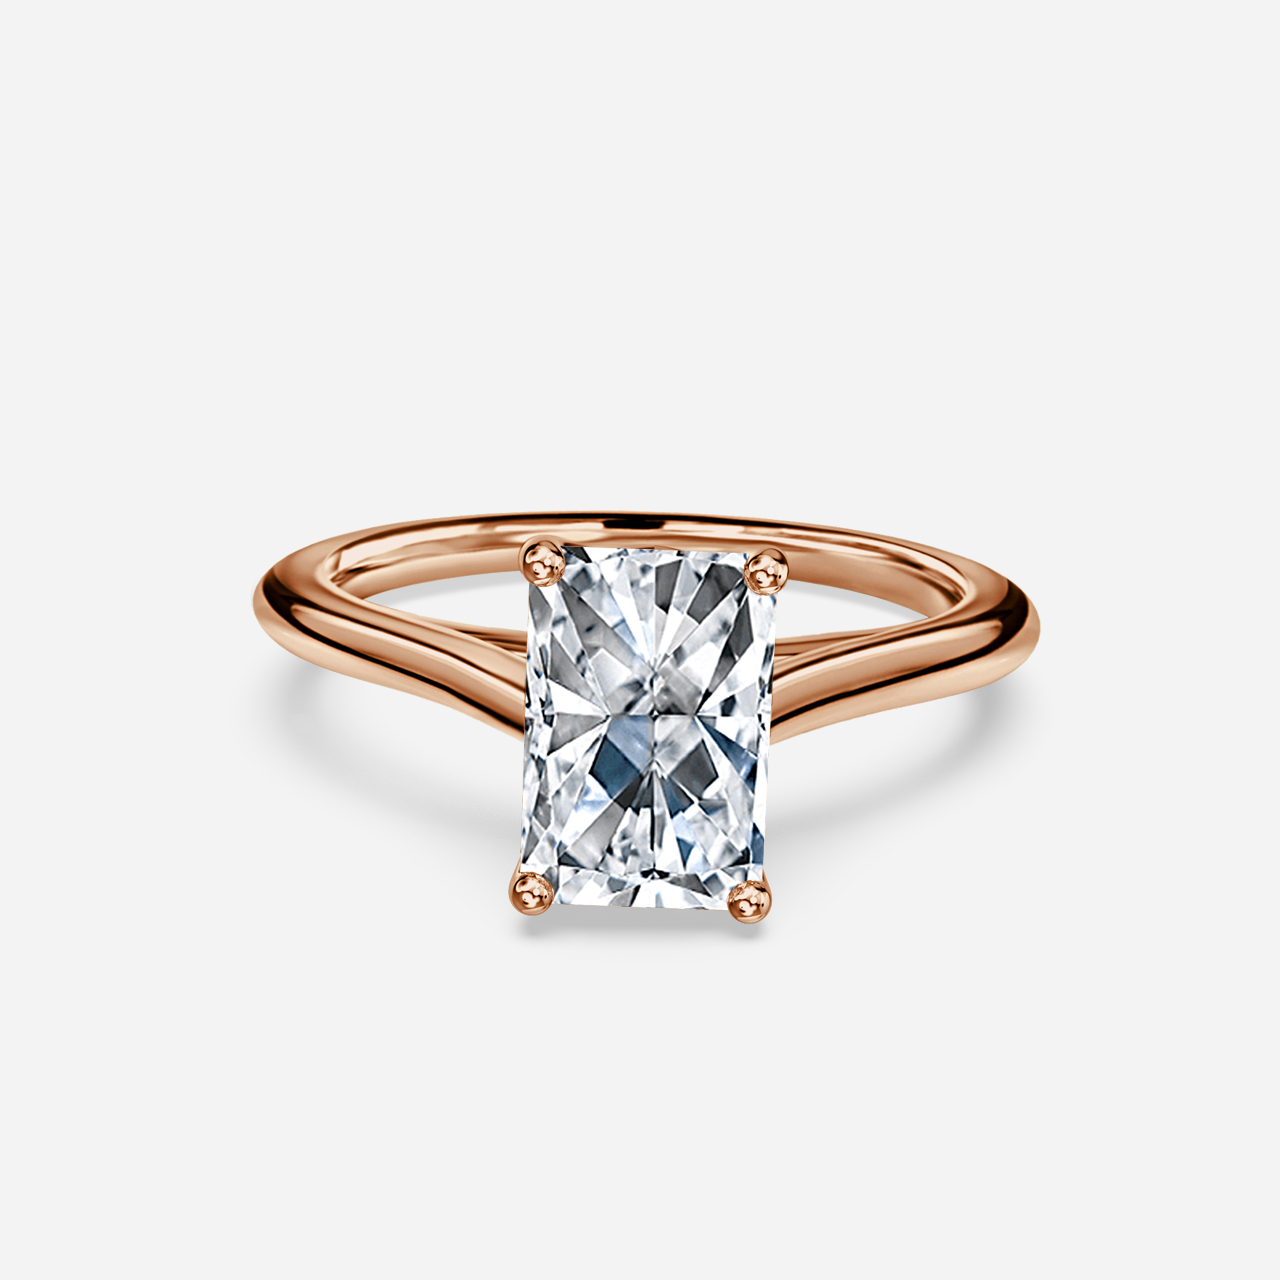 Aerin Rose Gold Unique Engagement Ring